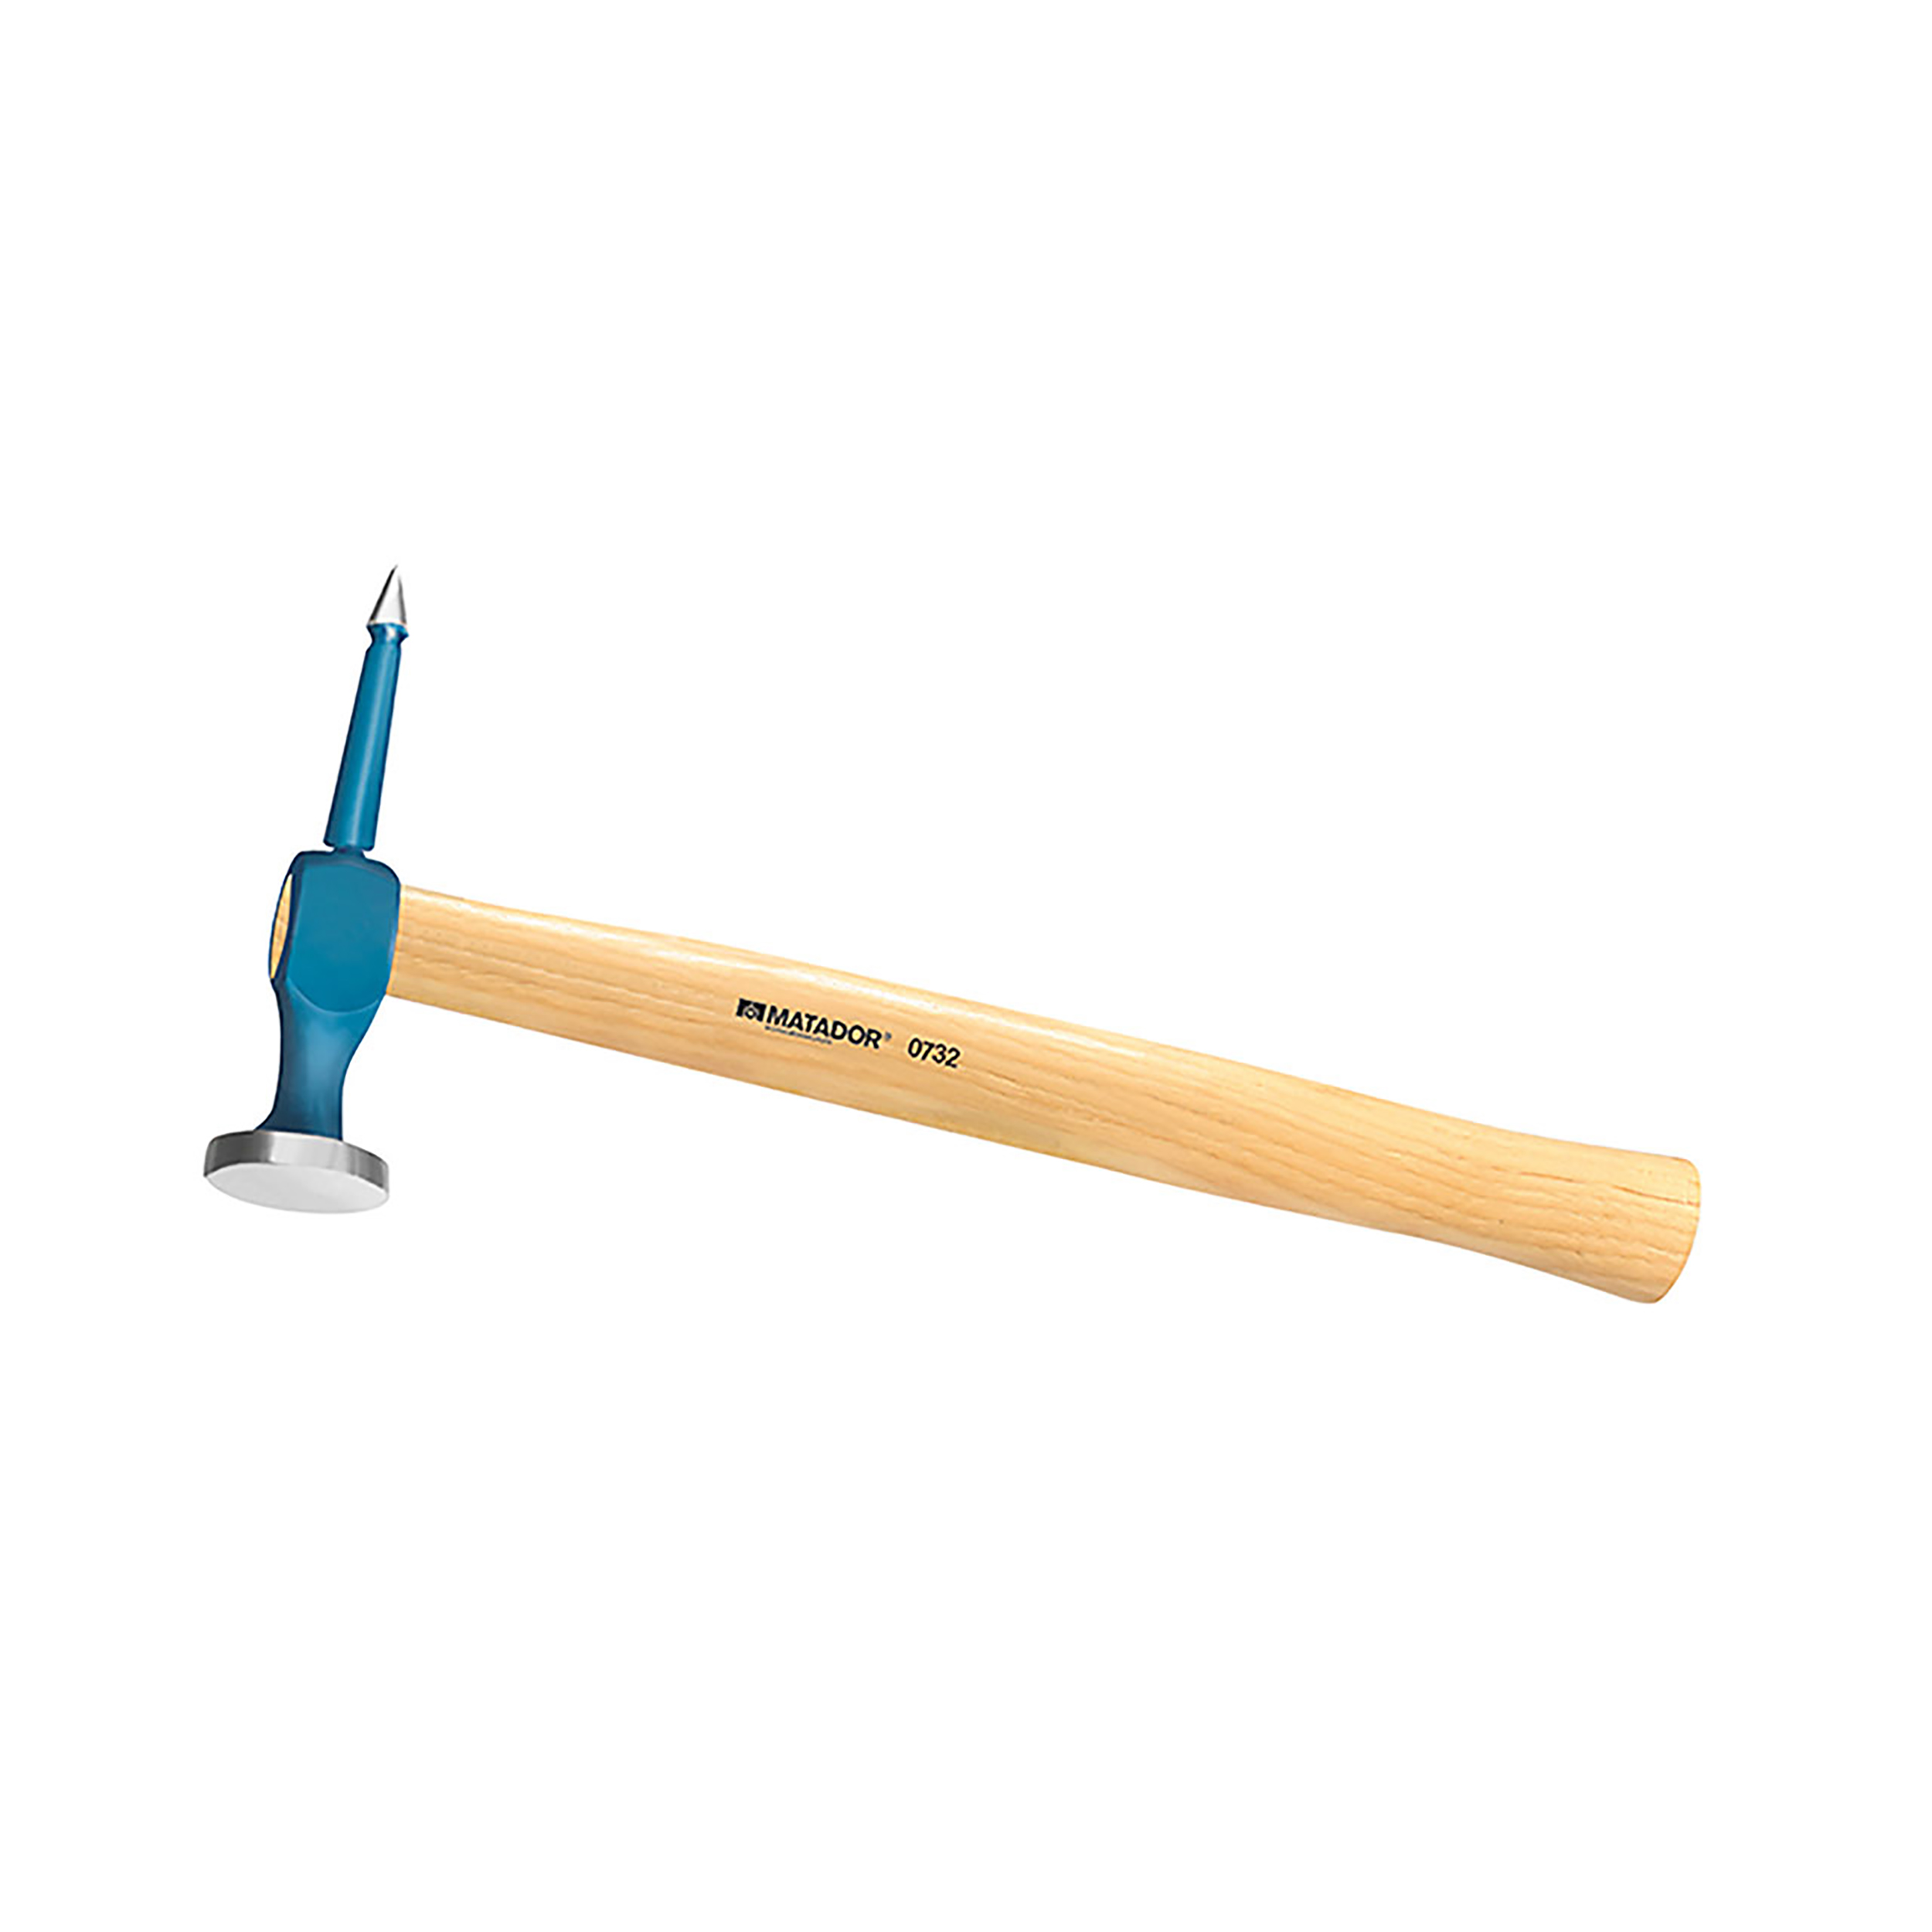 Bumping hammer, 155x40x30 mm, MATADOR item no.: 07320008